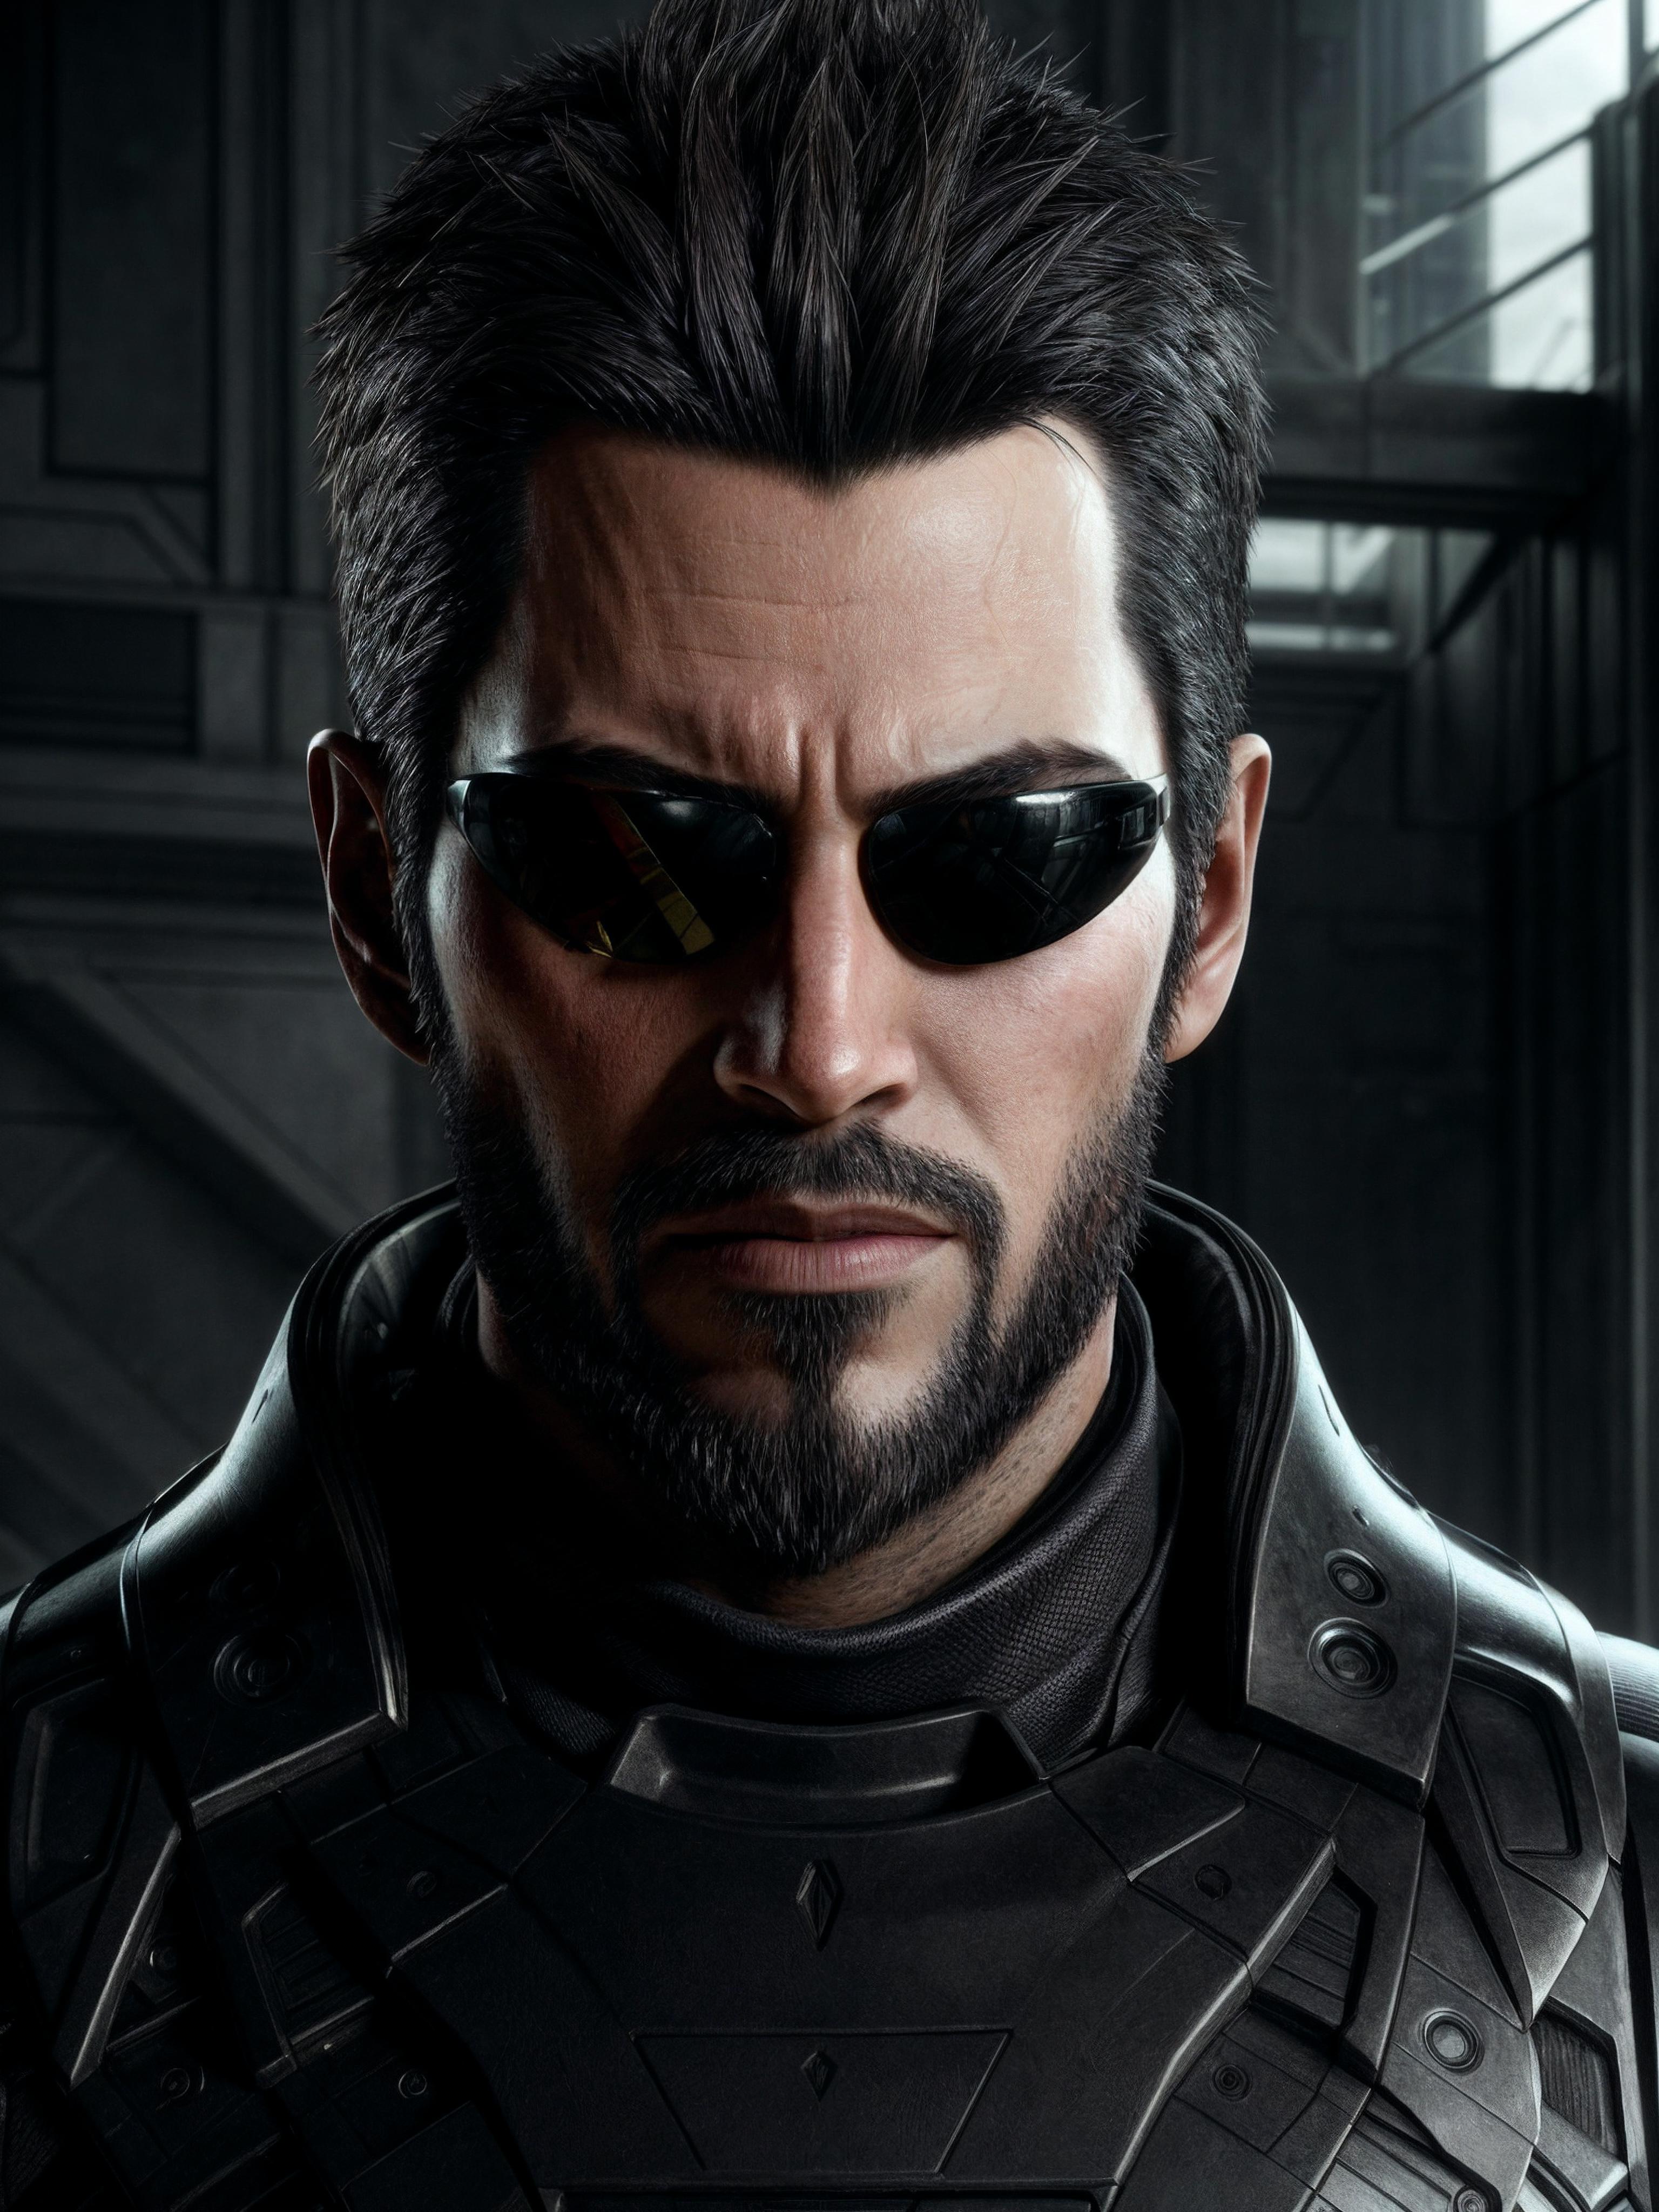 Adam Jensen (Deus Ex) LoRA image by Taloji